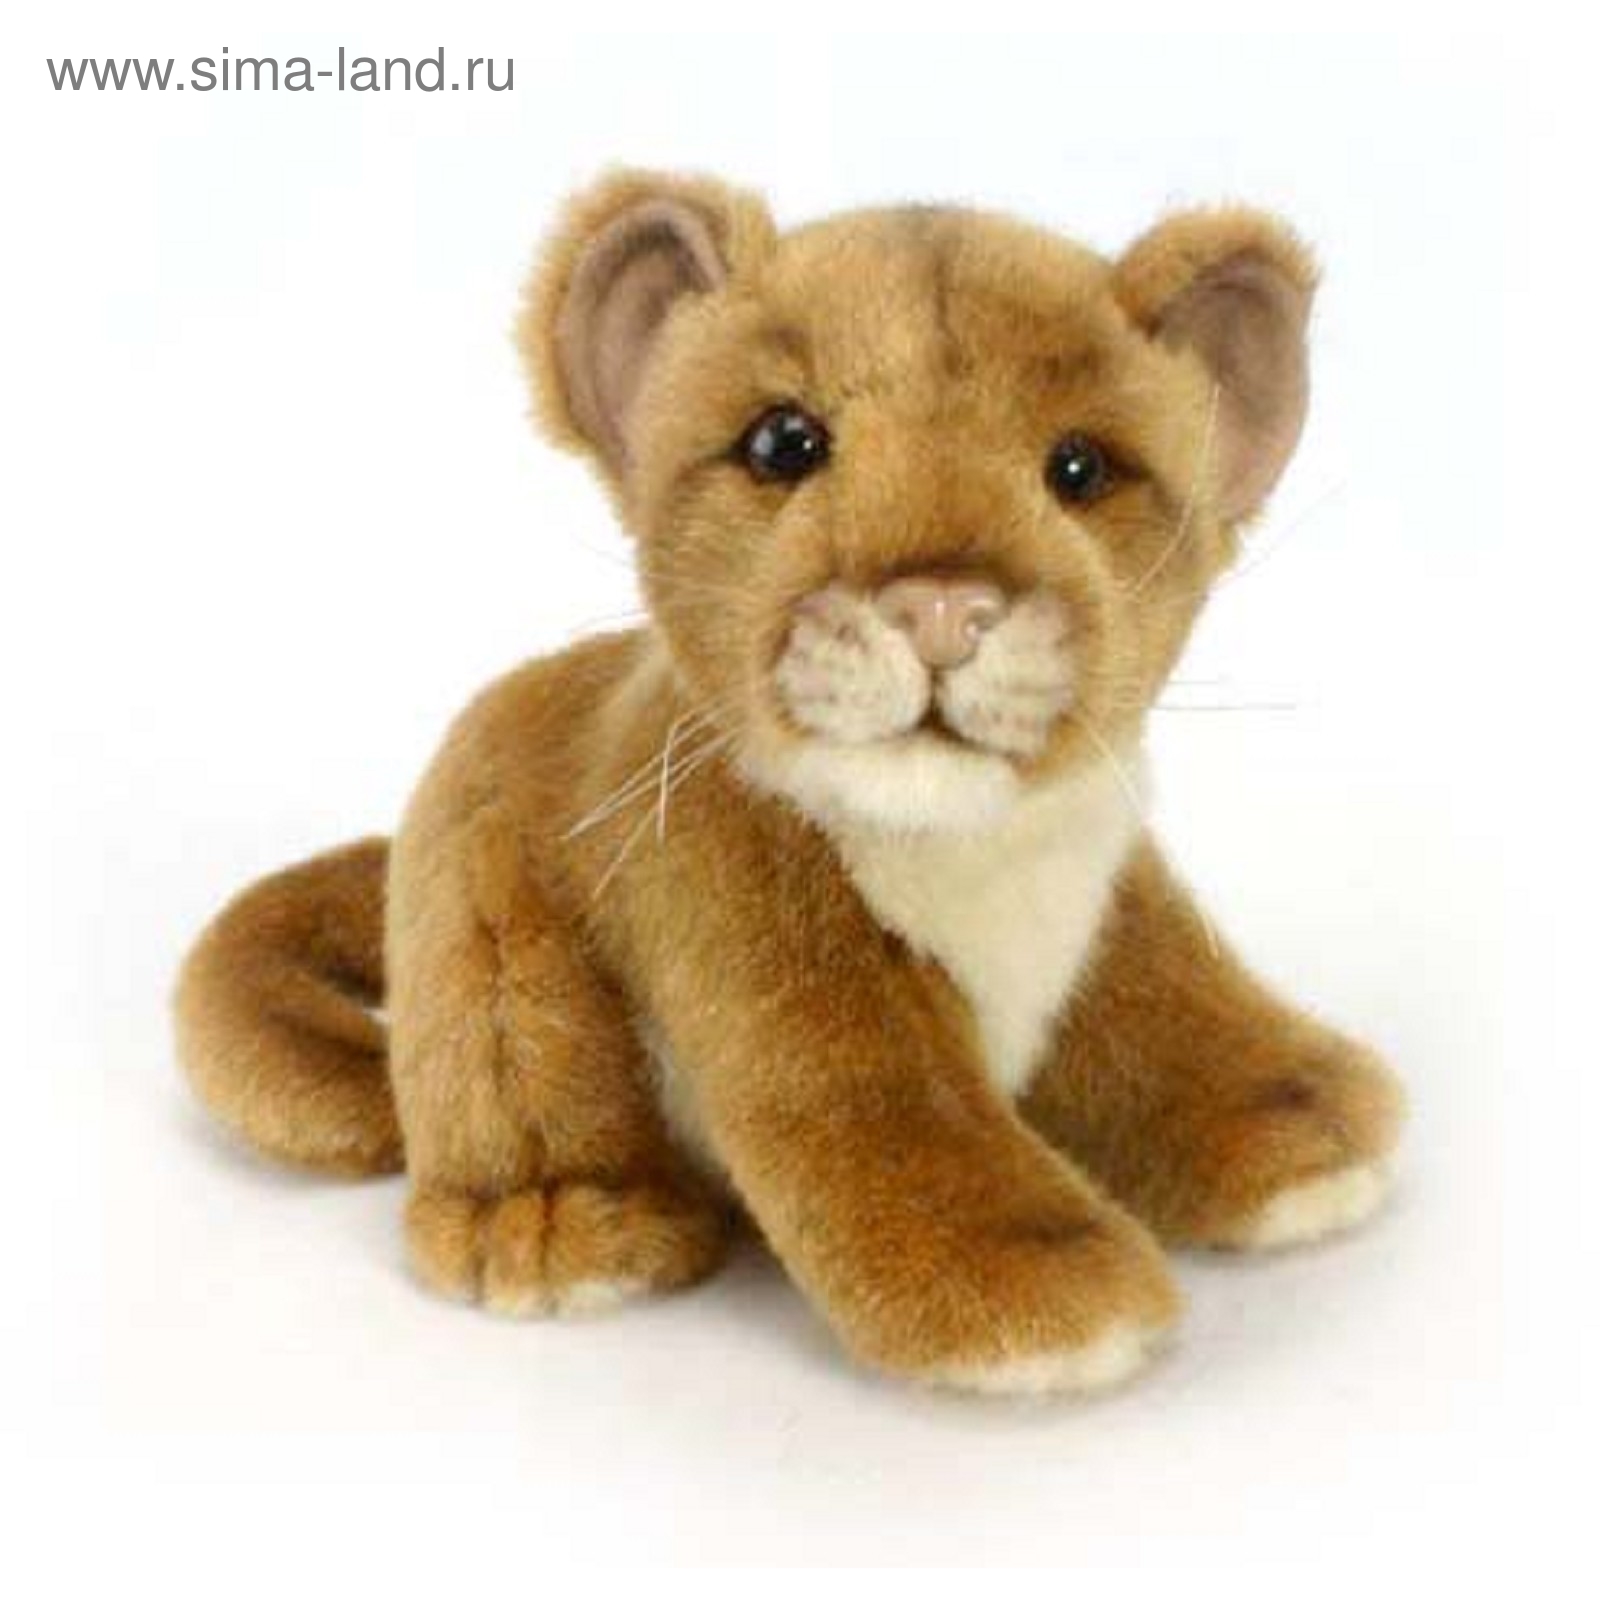 Купить мягкую игрушку Льва | Мягкая игрушка Львенок | Мягкие игрушки Львята оптом